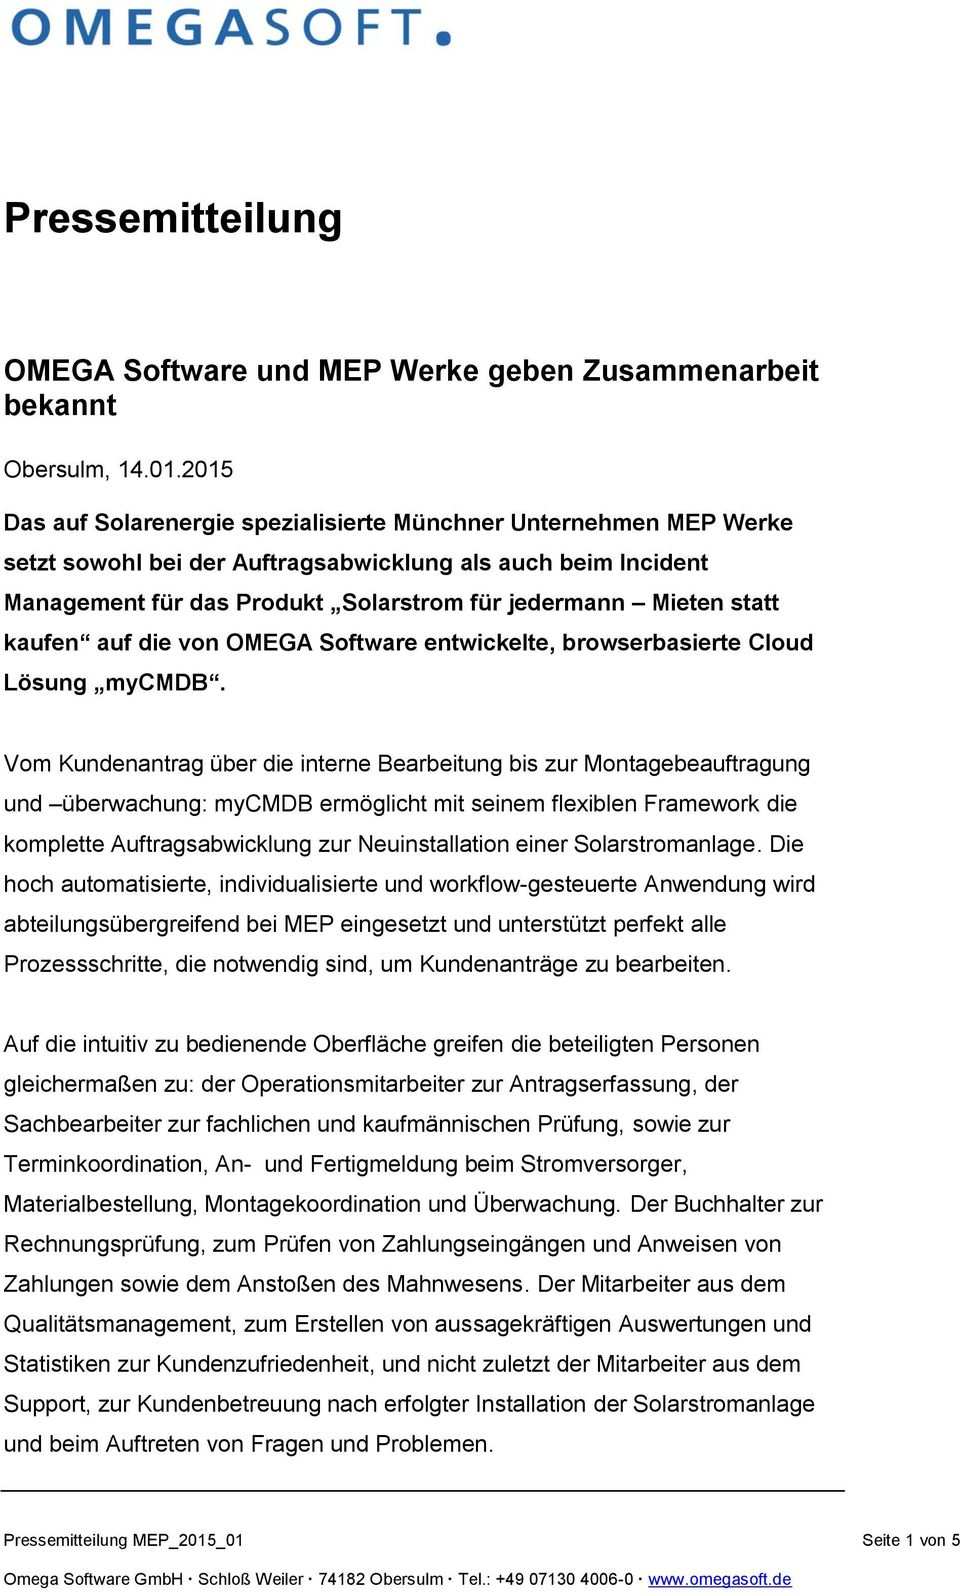 kaufen auf die von OMEGA Software entwickelte, browserbasierte Cloud Lösung mycmdb.